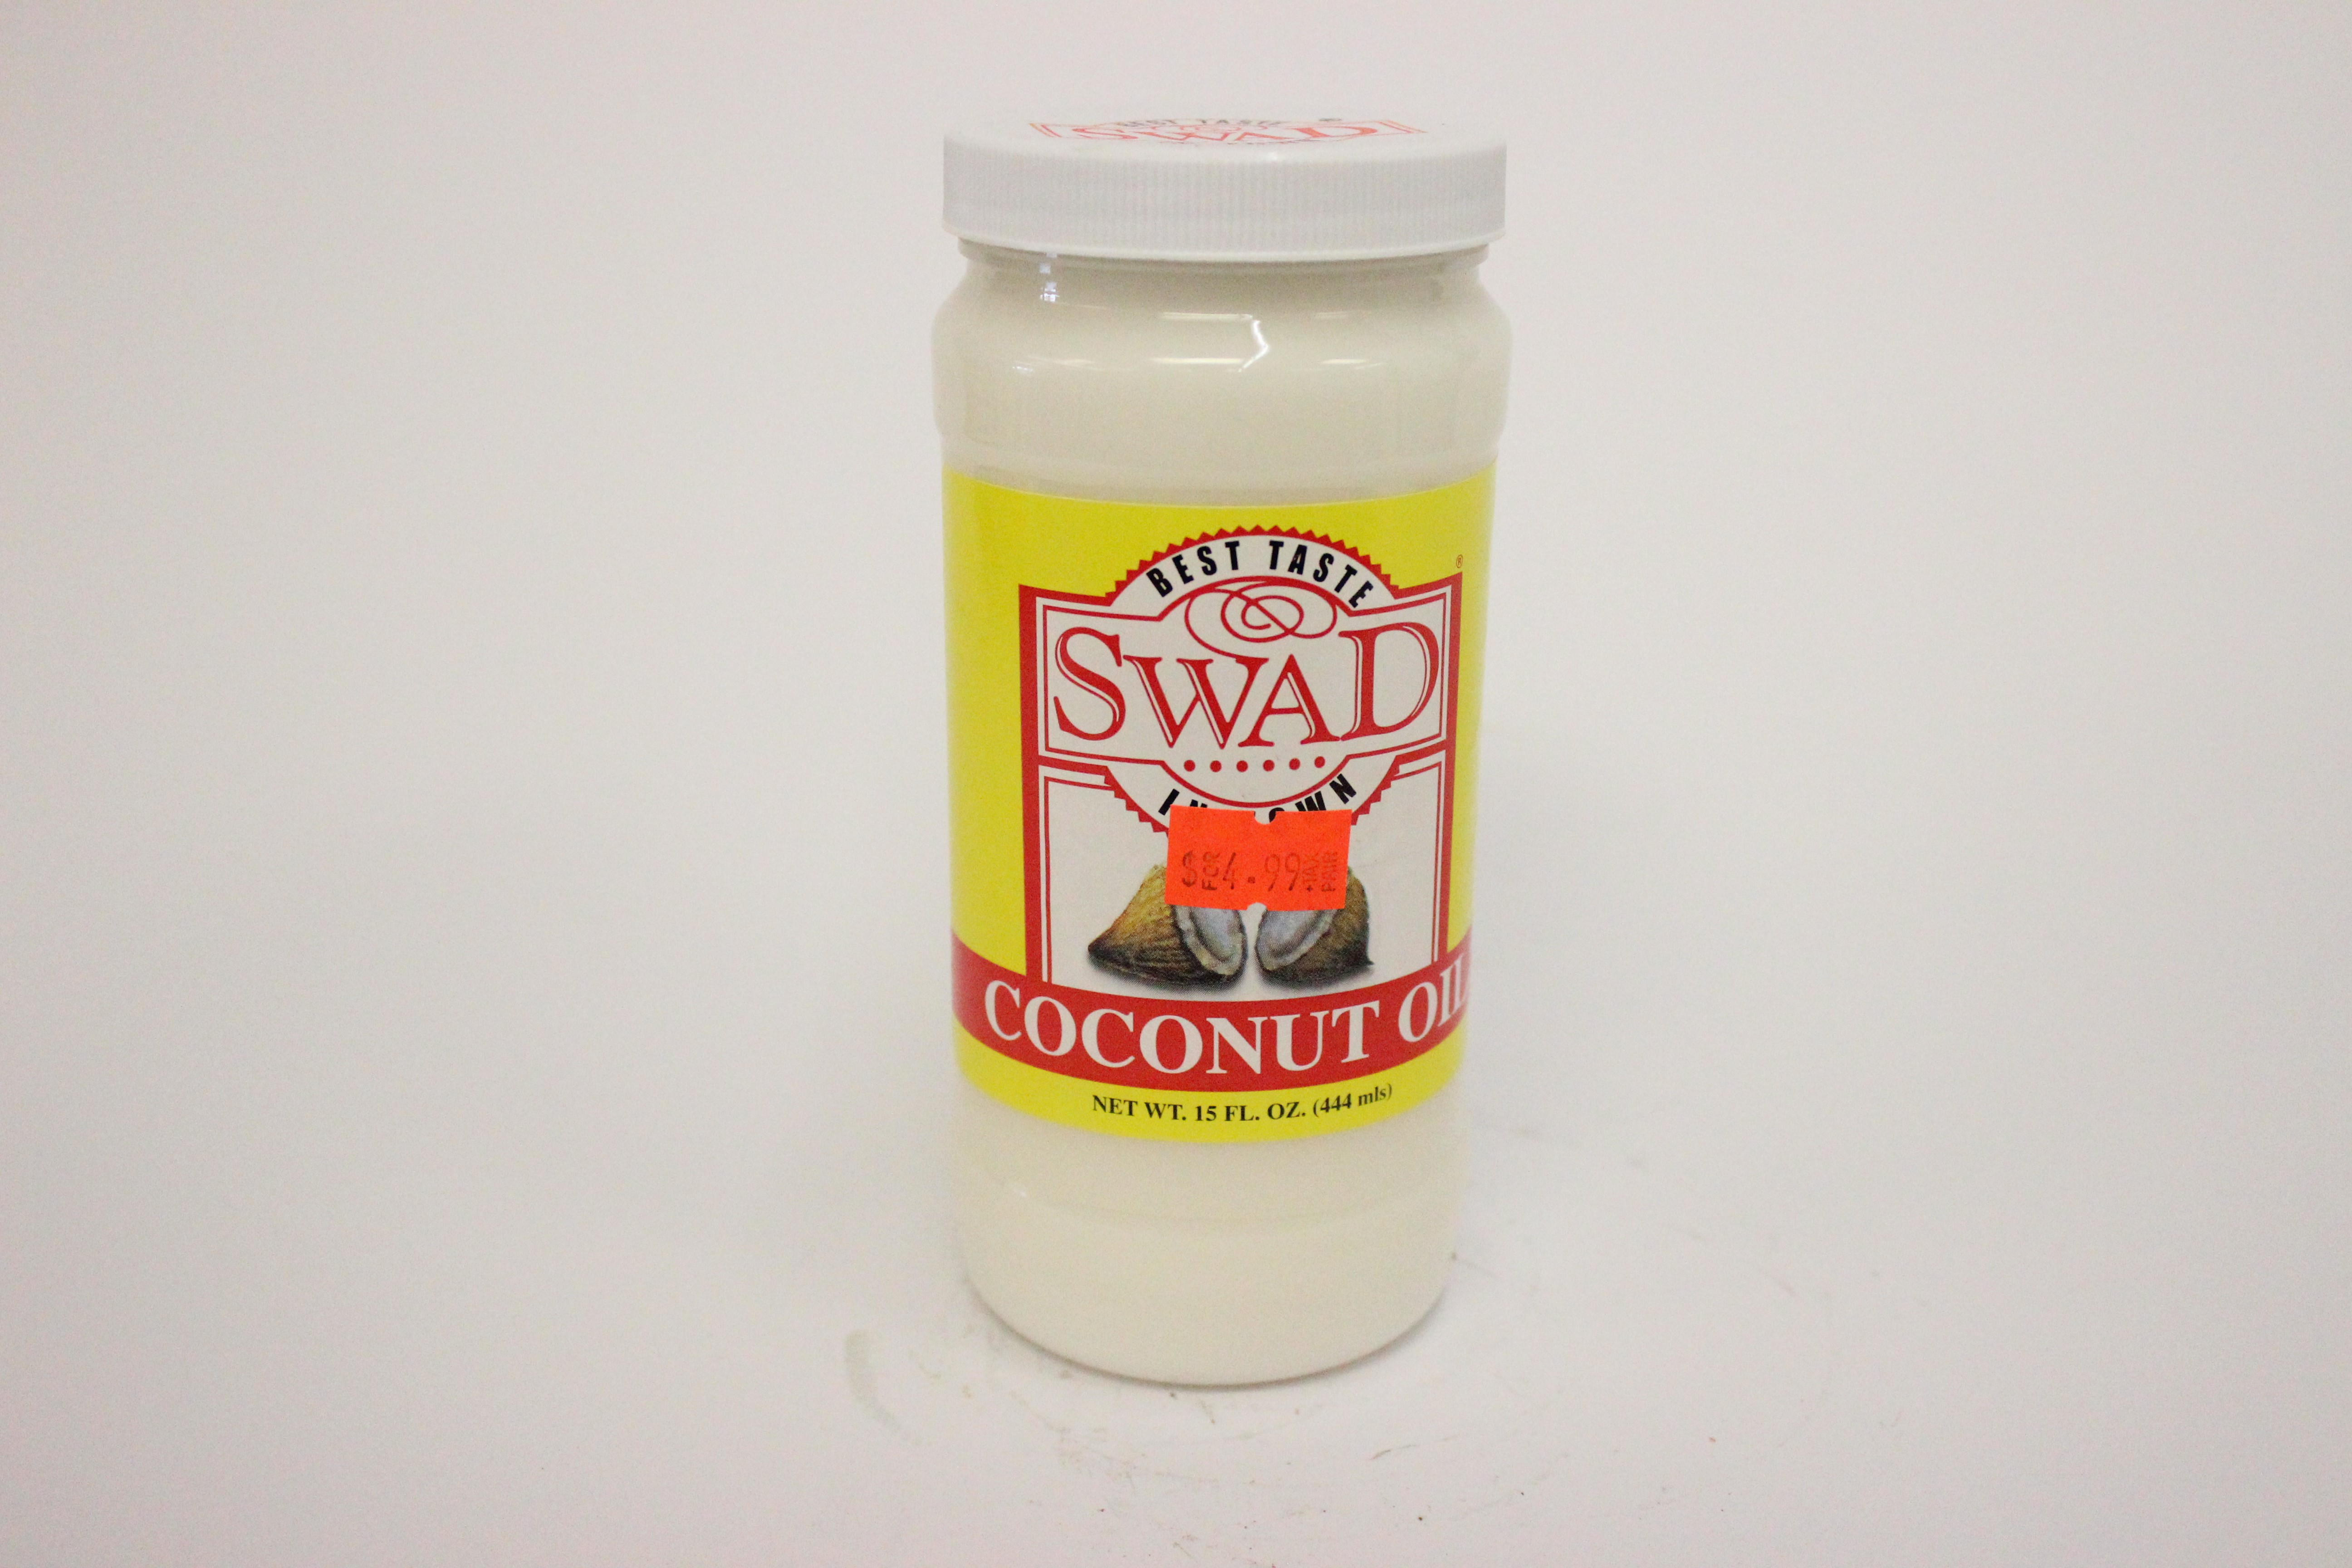 Swad Coconut Oil 15 oz